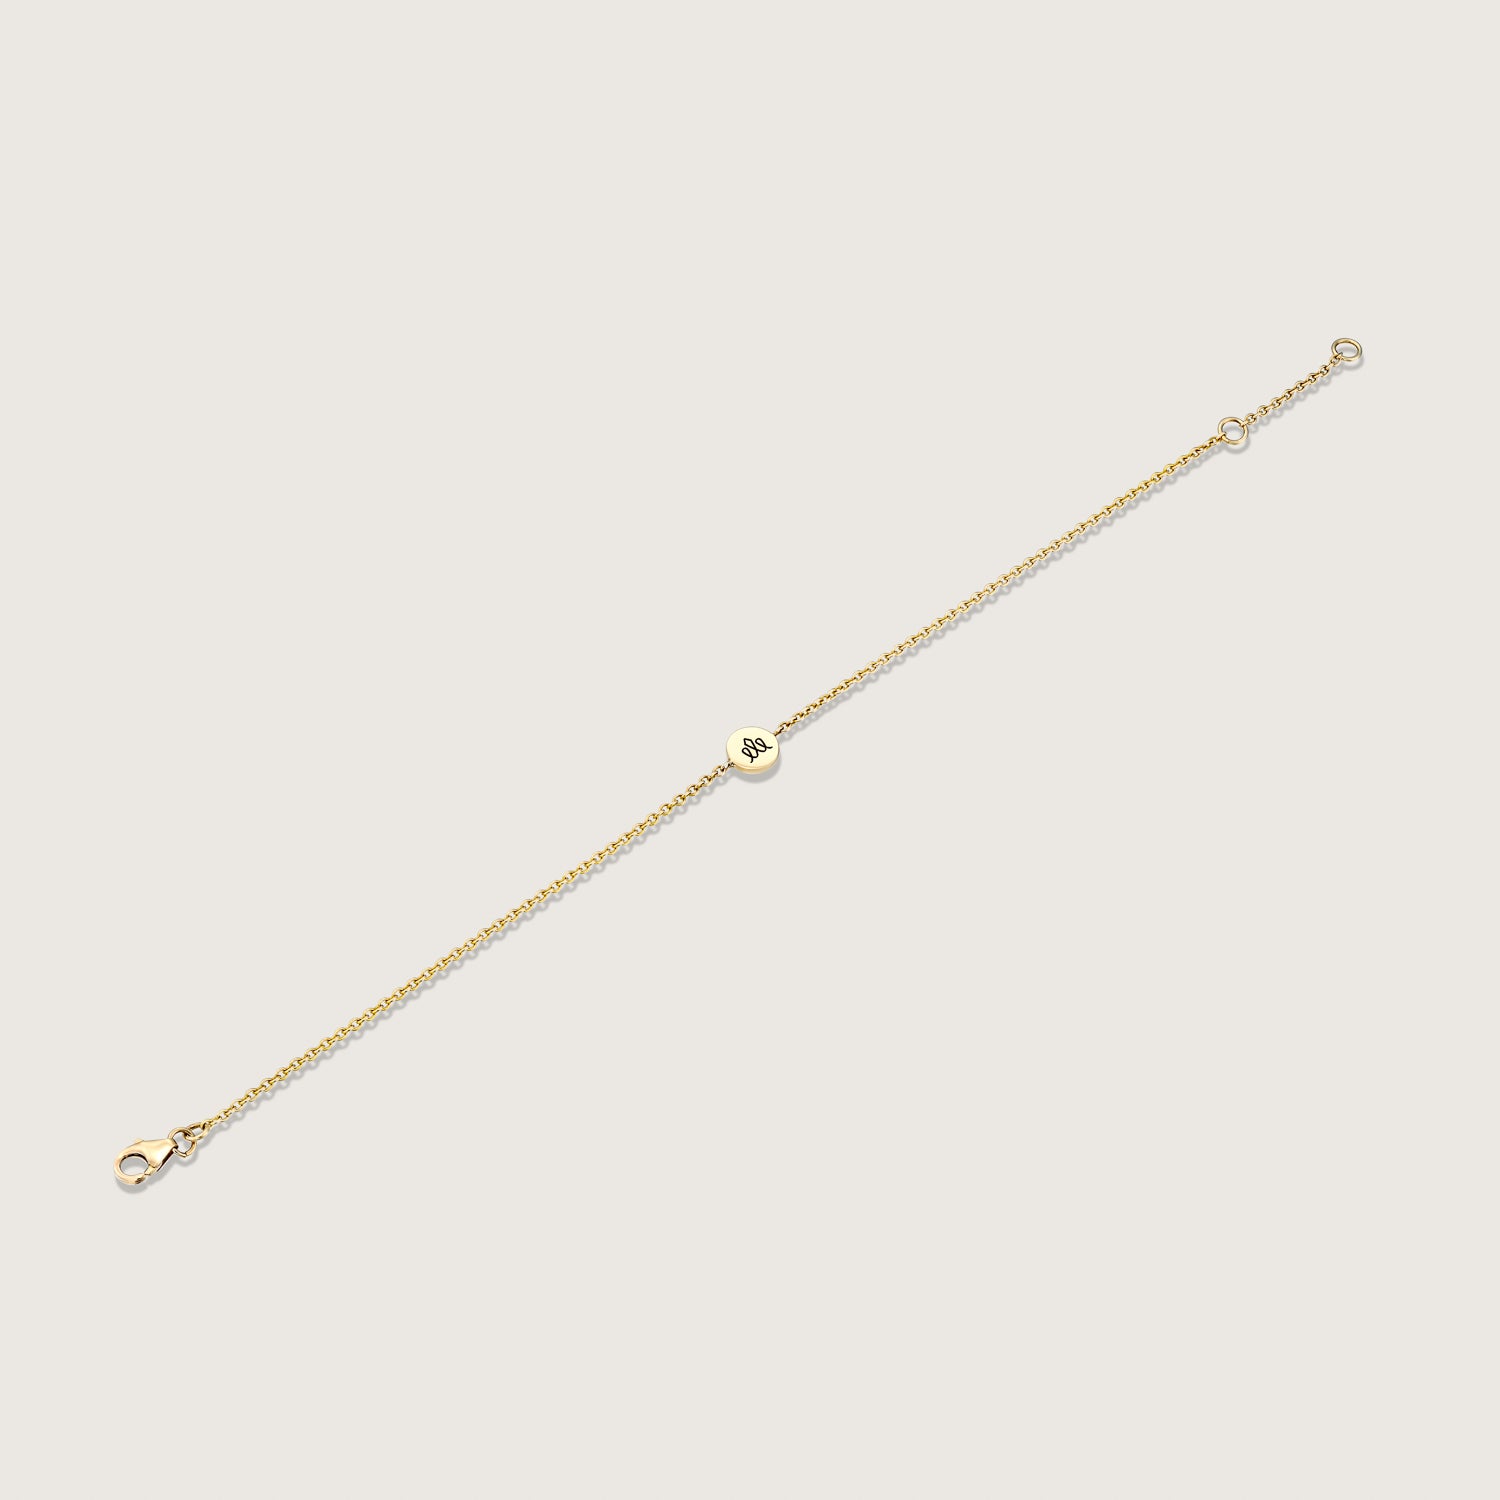 Round Crown element gold chain bracelet